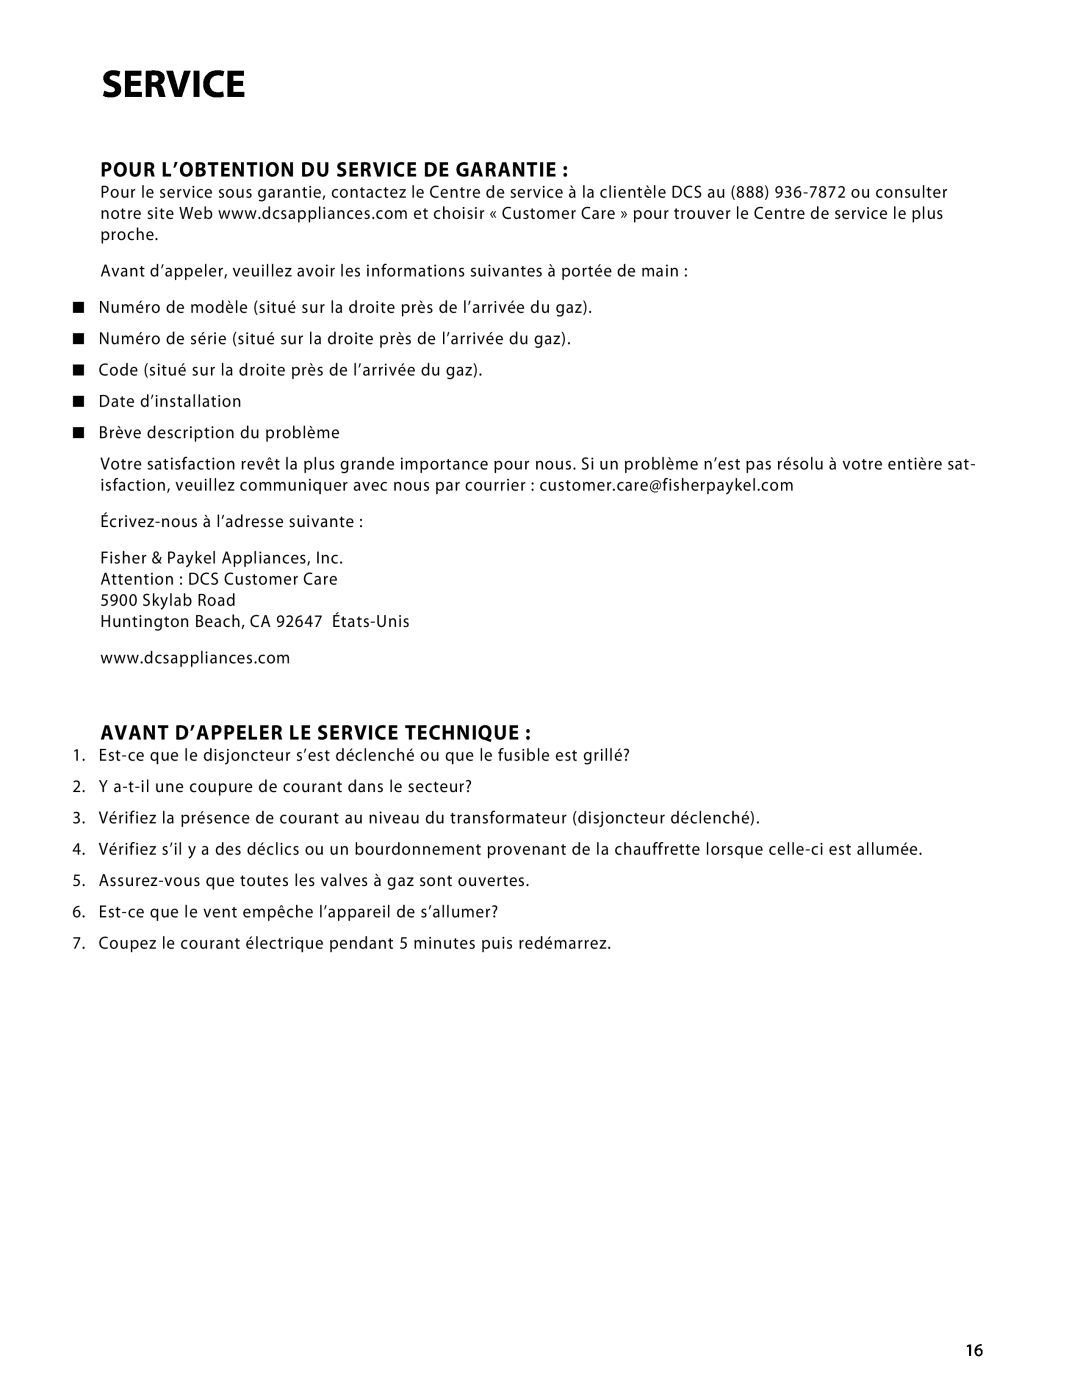 Fisher & Paykel DRH-48N manual Pour L’Obtention Du Service De Garantie, Avant D’Appeler Le Service Technique 